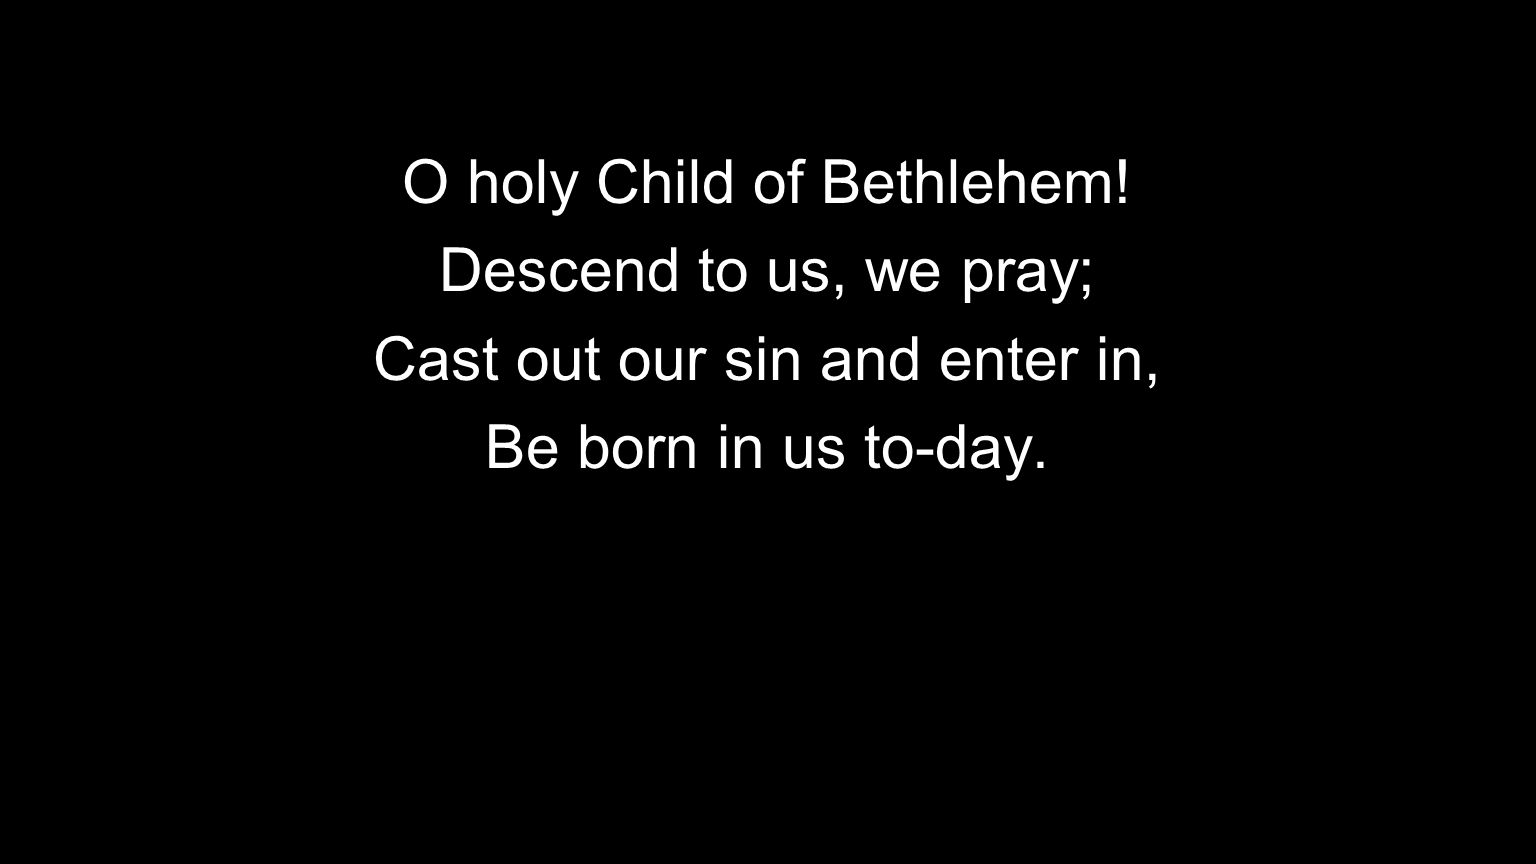 O holy Child of Bethlehem.